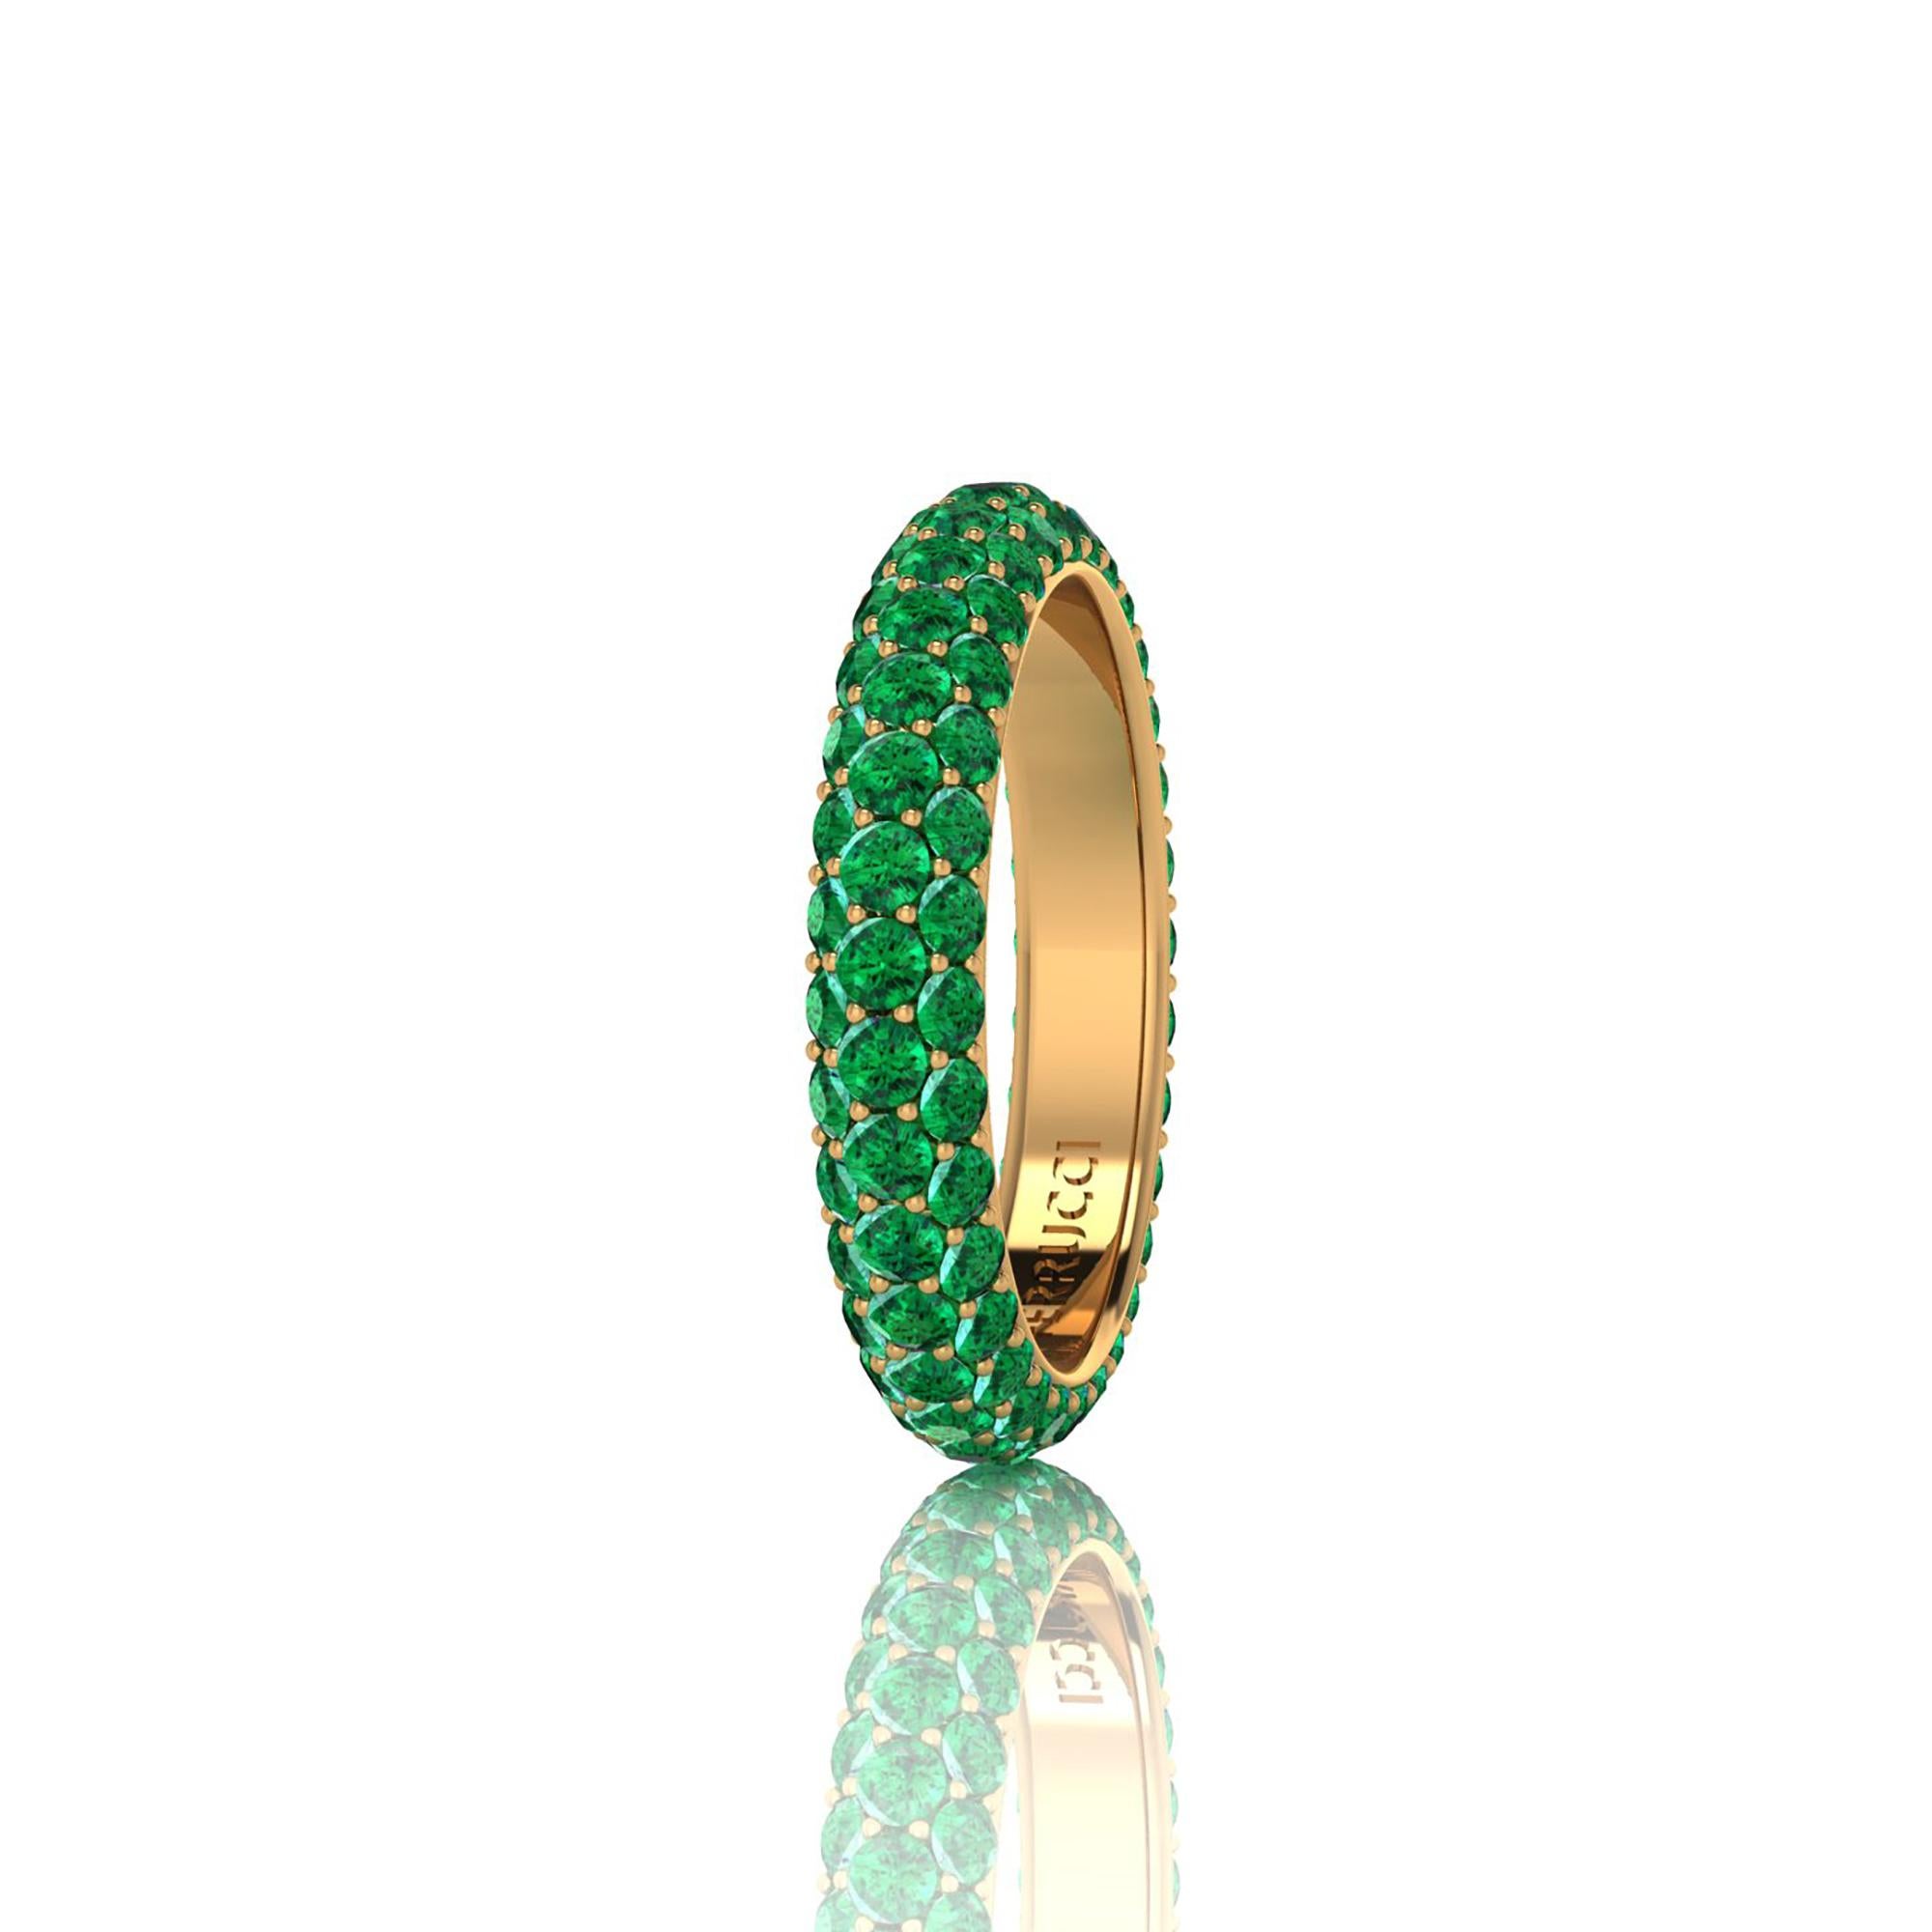 Bague d'éternité en émeraude verte,  un poids total approximatif de 2,50 carats, fabriqué à la main à New York avec le meilleur de l'artisanat italien, conçu en or jaune 18k.
Un style classique, sophistiqué et magnifique, qui perdure dans le